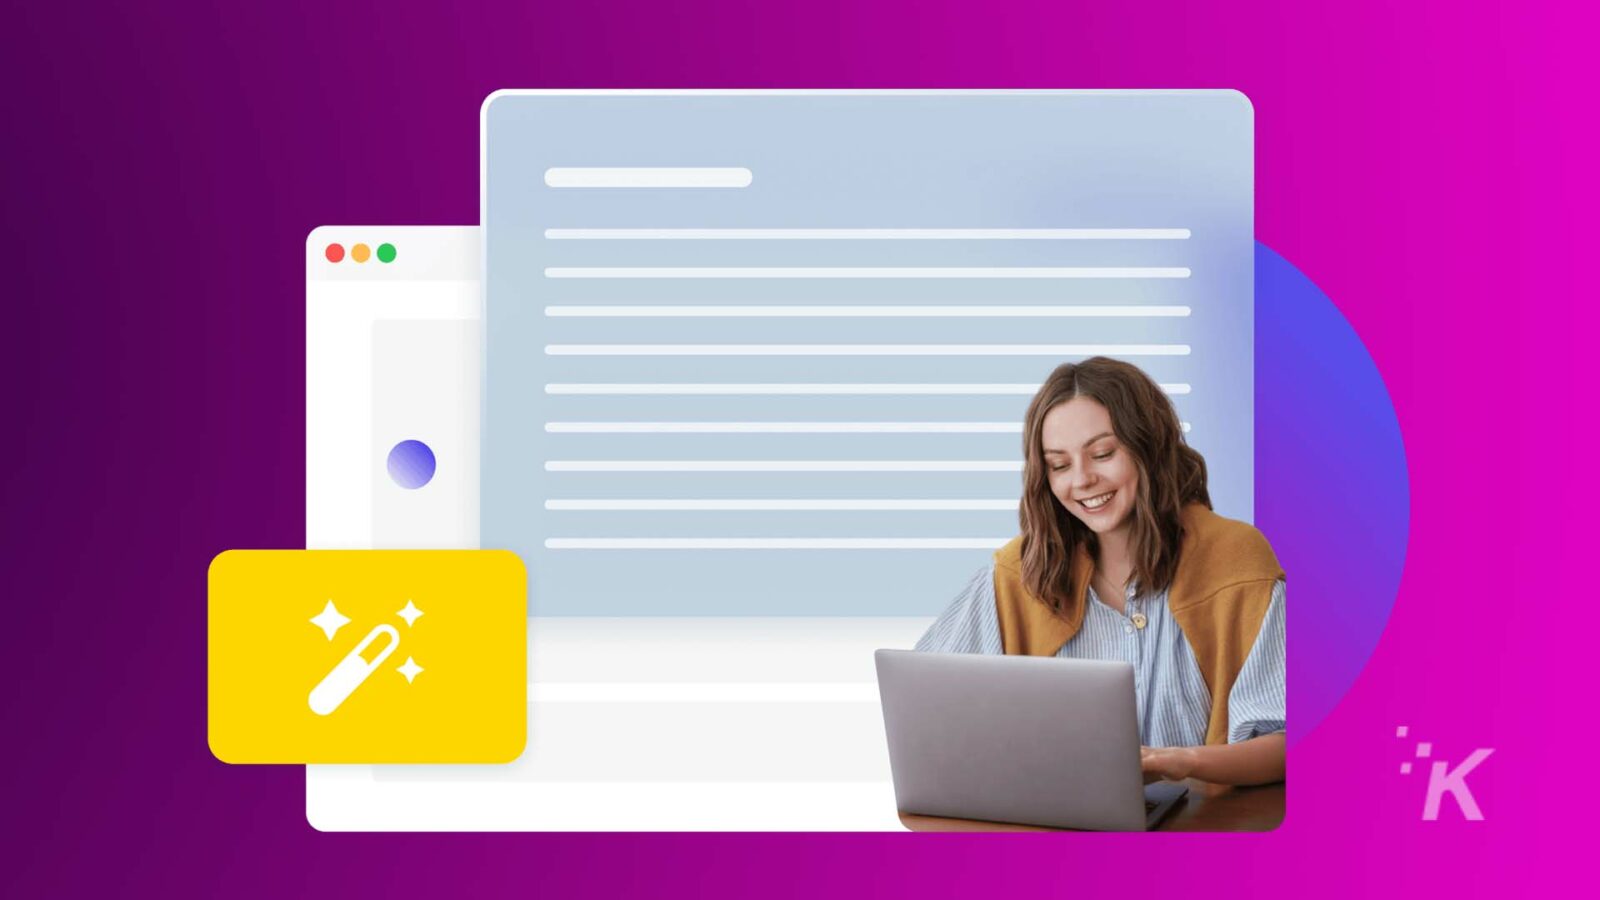 一個人正在對著筆記型電腦微笑，其圖形疊加暗示著 Web 開發工具，具有鮮豔的紫色和藍色背景。